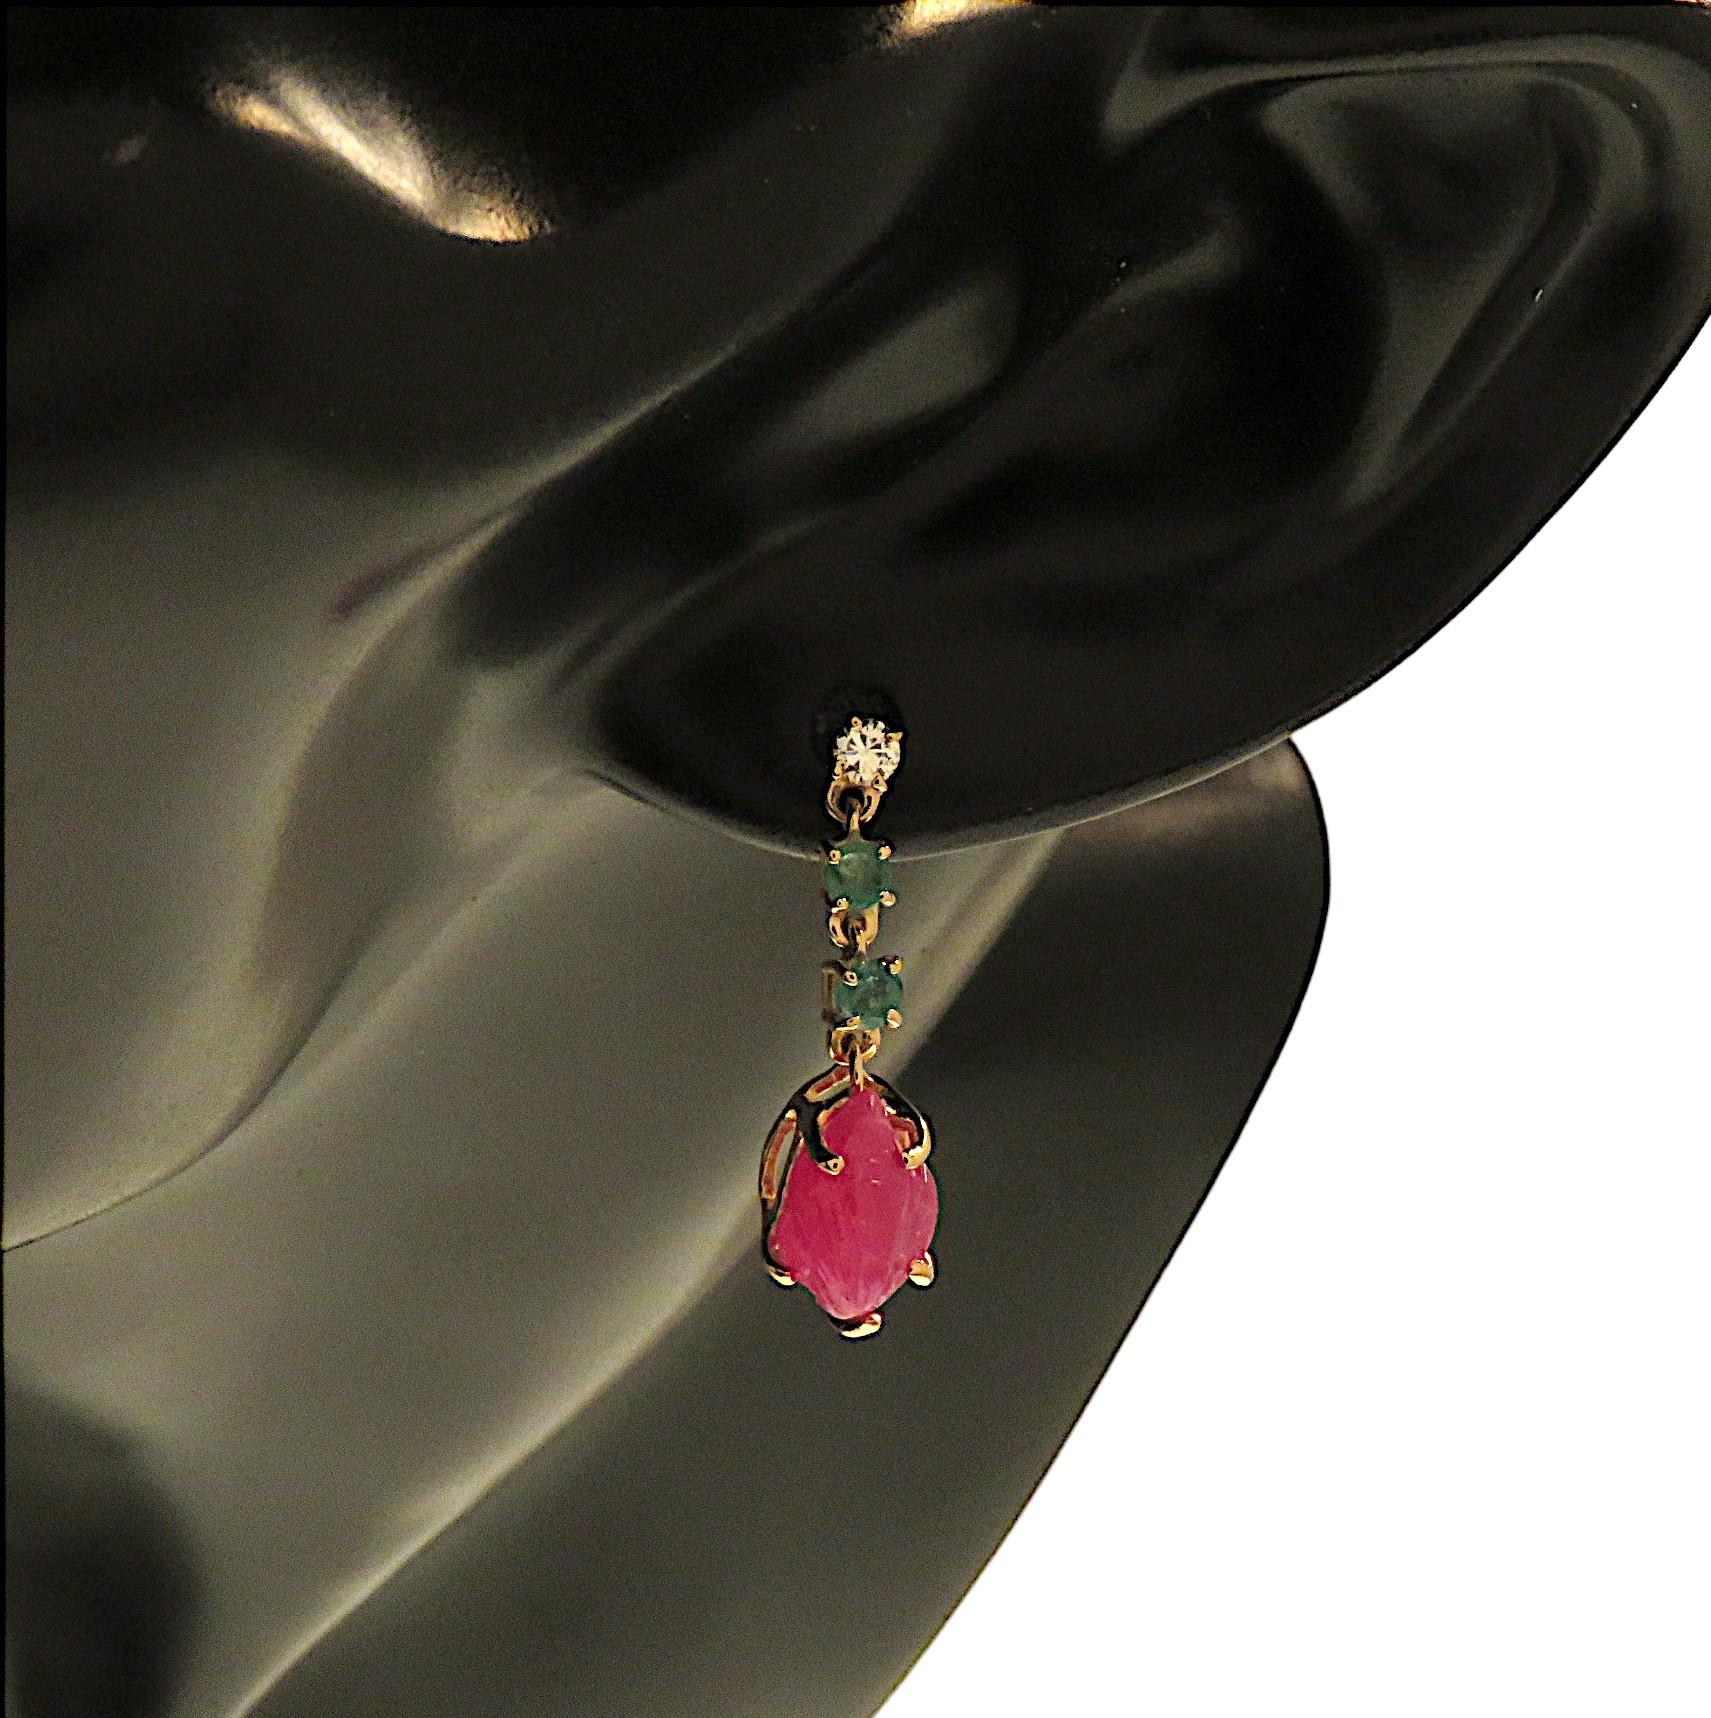 Eleganti orecchini in oro rosa 9k con diamanti e smeraldi taglio brillante e rubini taglio a foglia e incisi. Gli orecchini sono prodotti a mano da Botta Gioielli nel laboratorio di Milano Italia. Ogni foglia di rubino misura 10x7 mm / 0.39x0.27